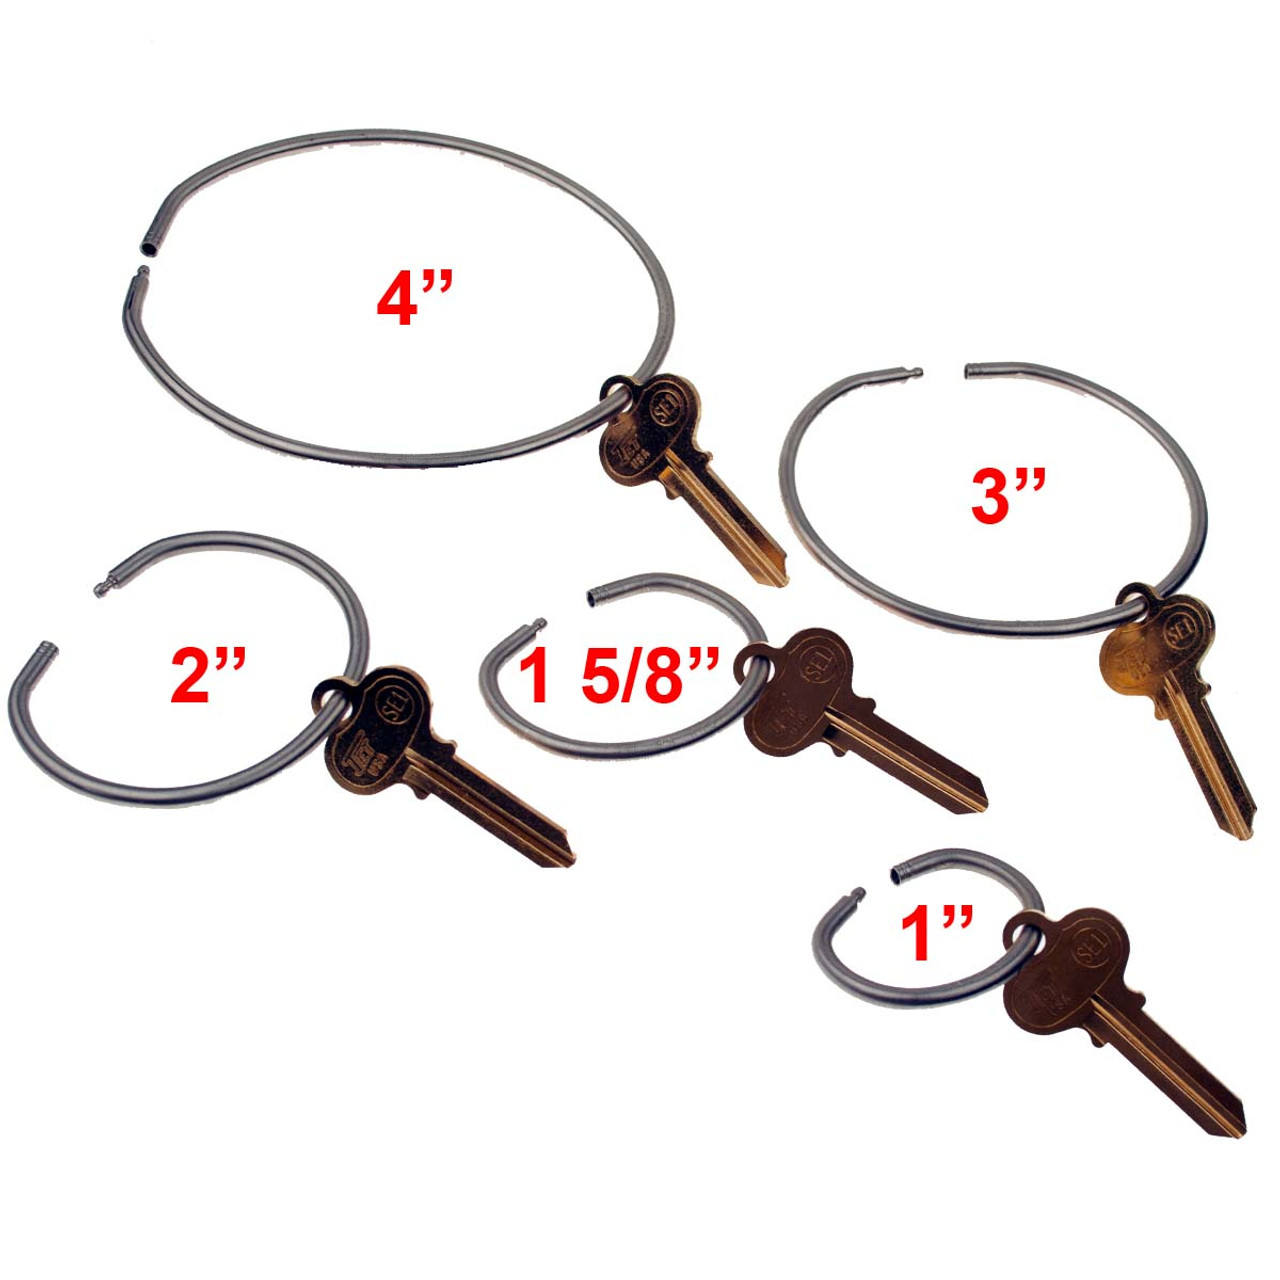 1.25 Key Rings for Keychains Rings for Home Car Office, Metal Split Key  Ring Set, Round Keyrings for Keys Bulk Pack 